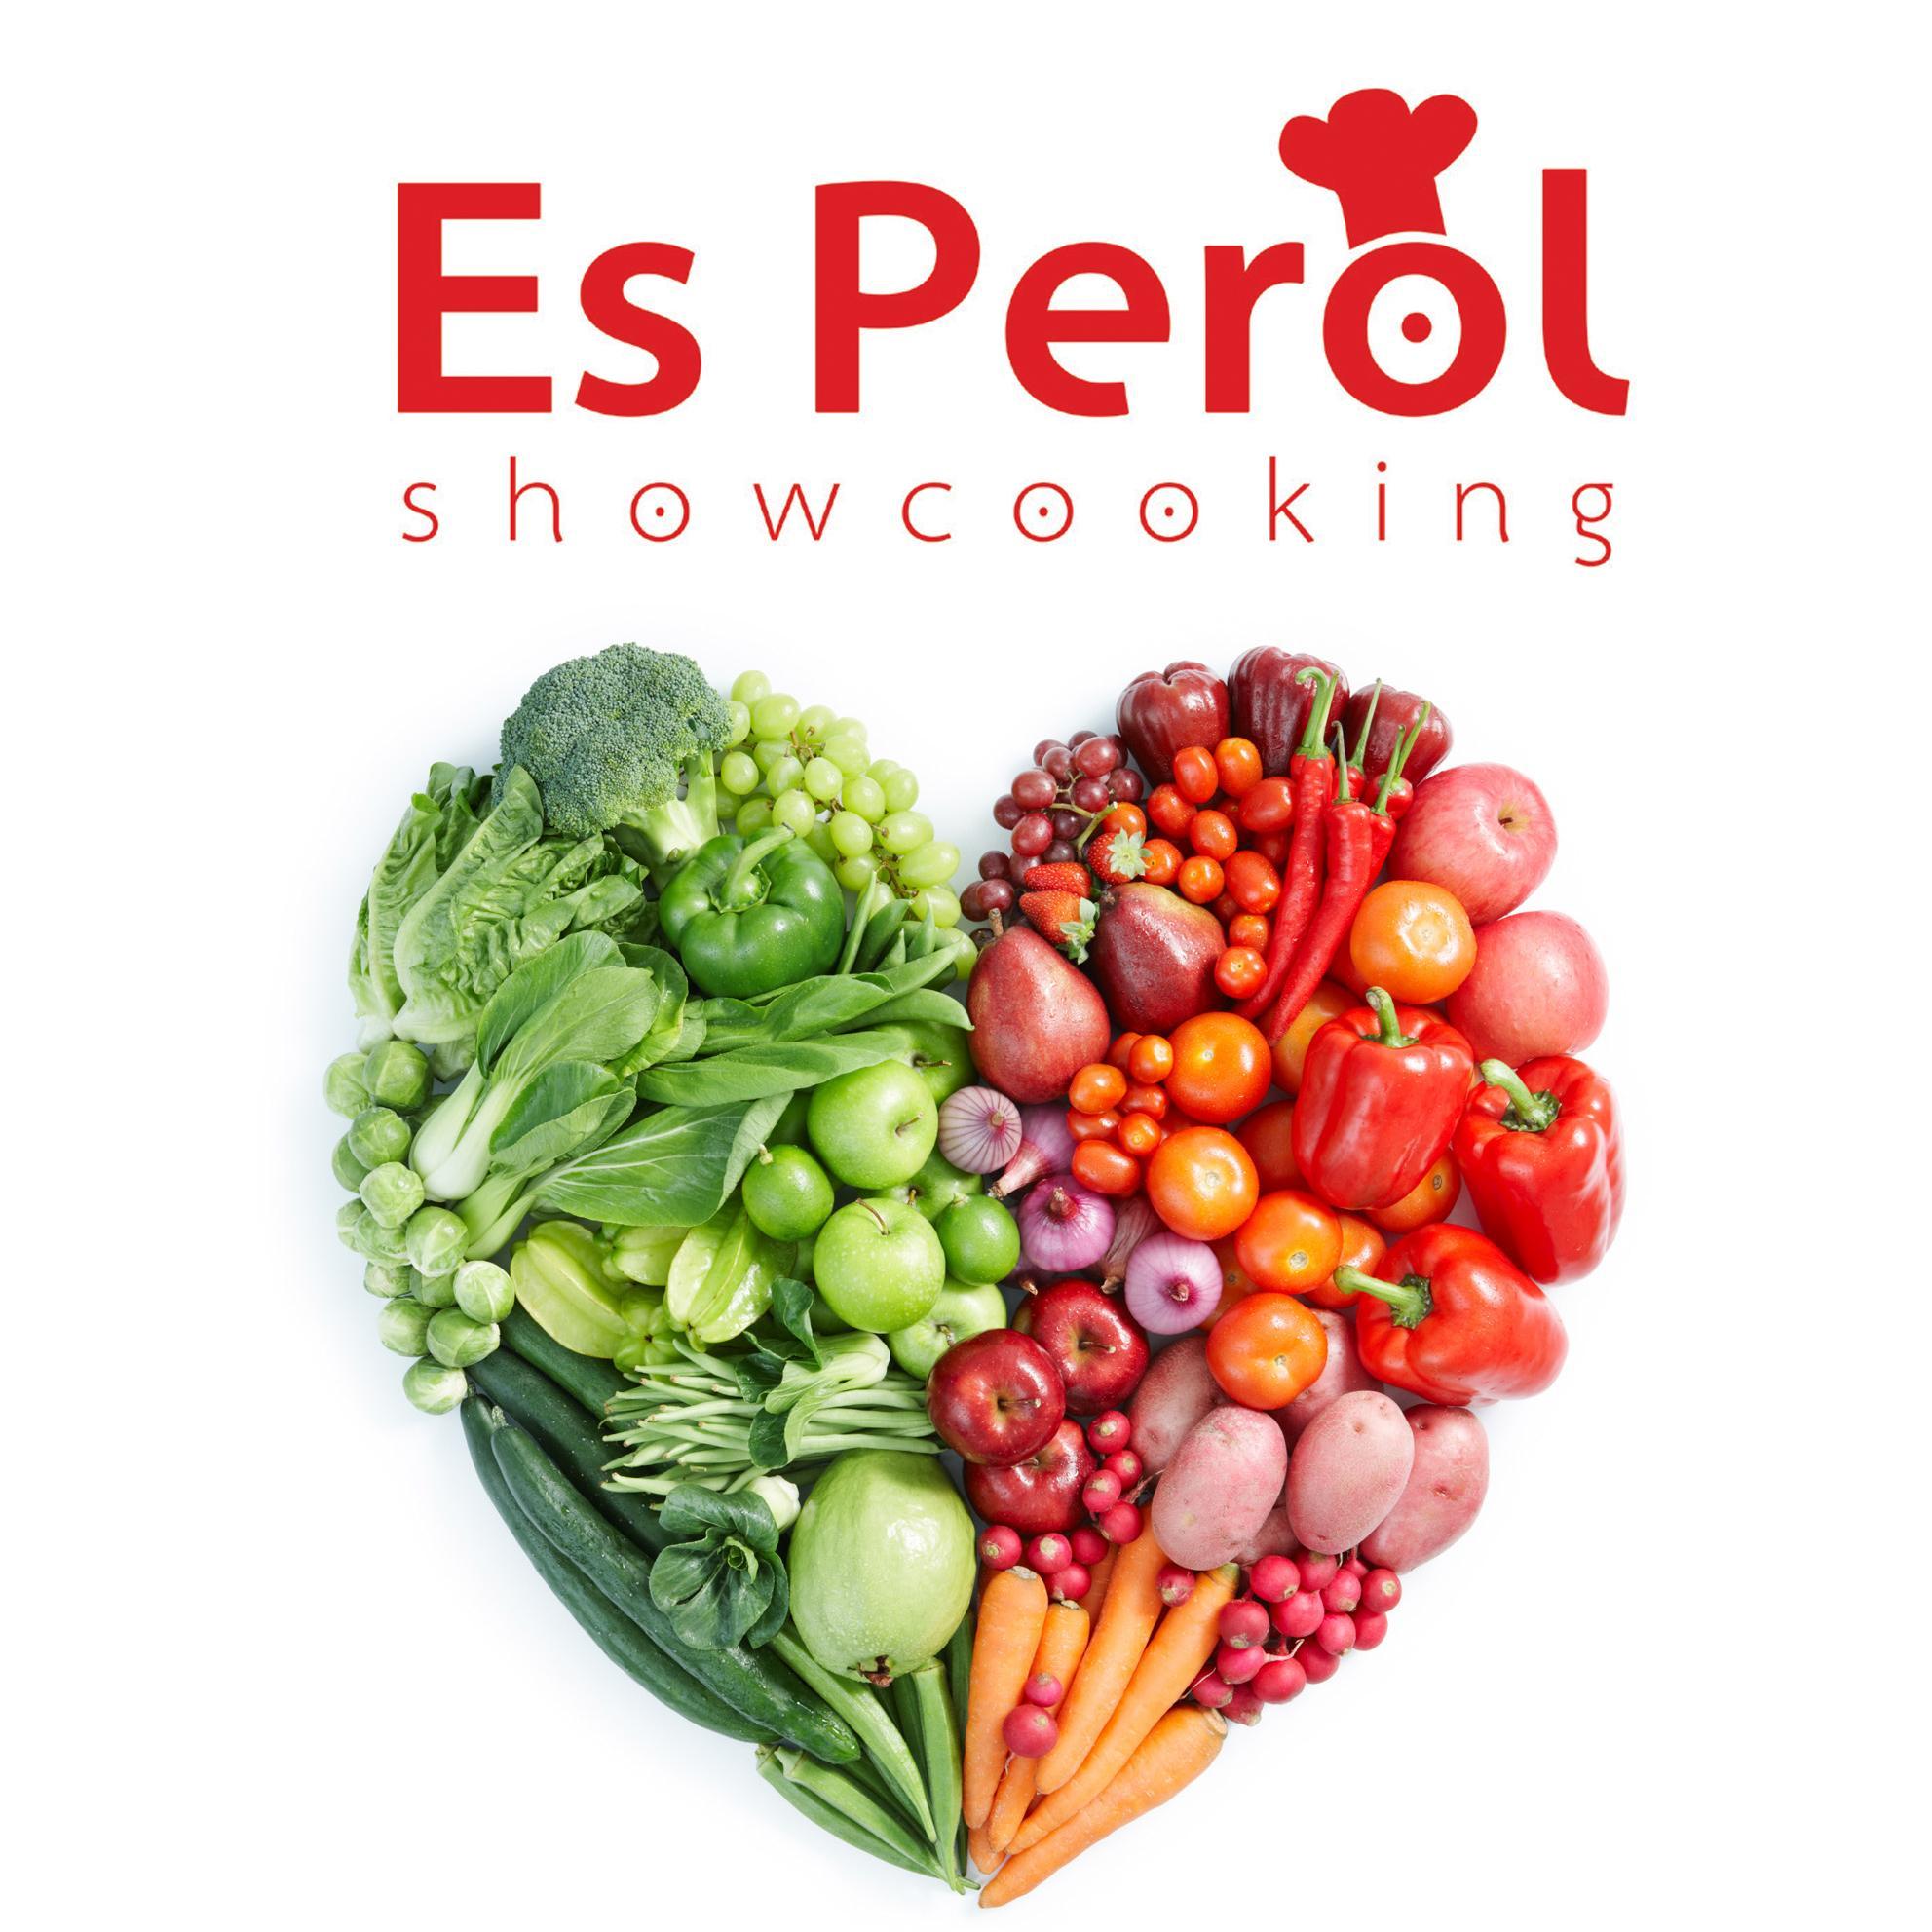 Es Perol Showcooking el nuevo espacio gastronómico de APalliser en Maó donde se impartirán diversos talleres y cursos de cocina.